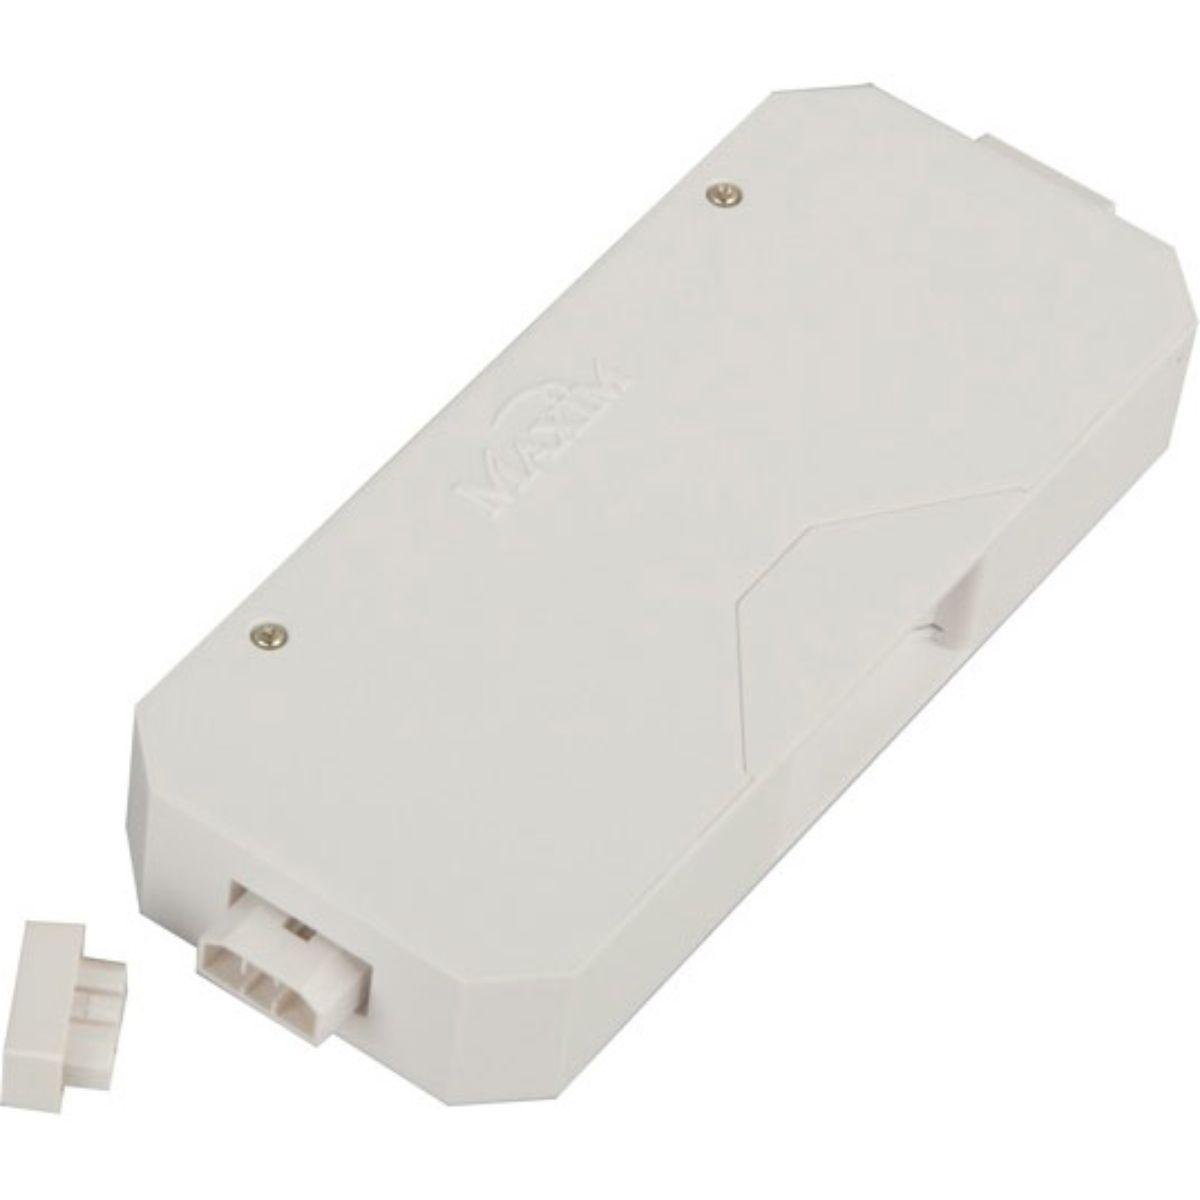 CounterMax 5in. Direct Wire Box, White